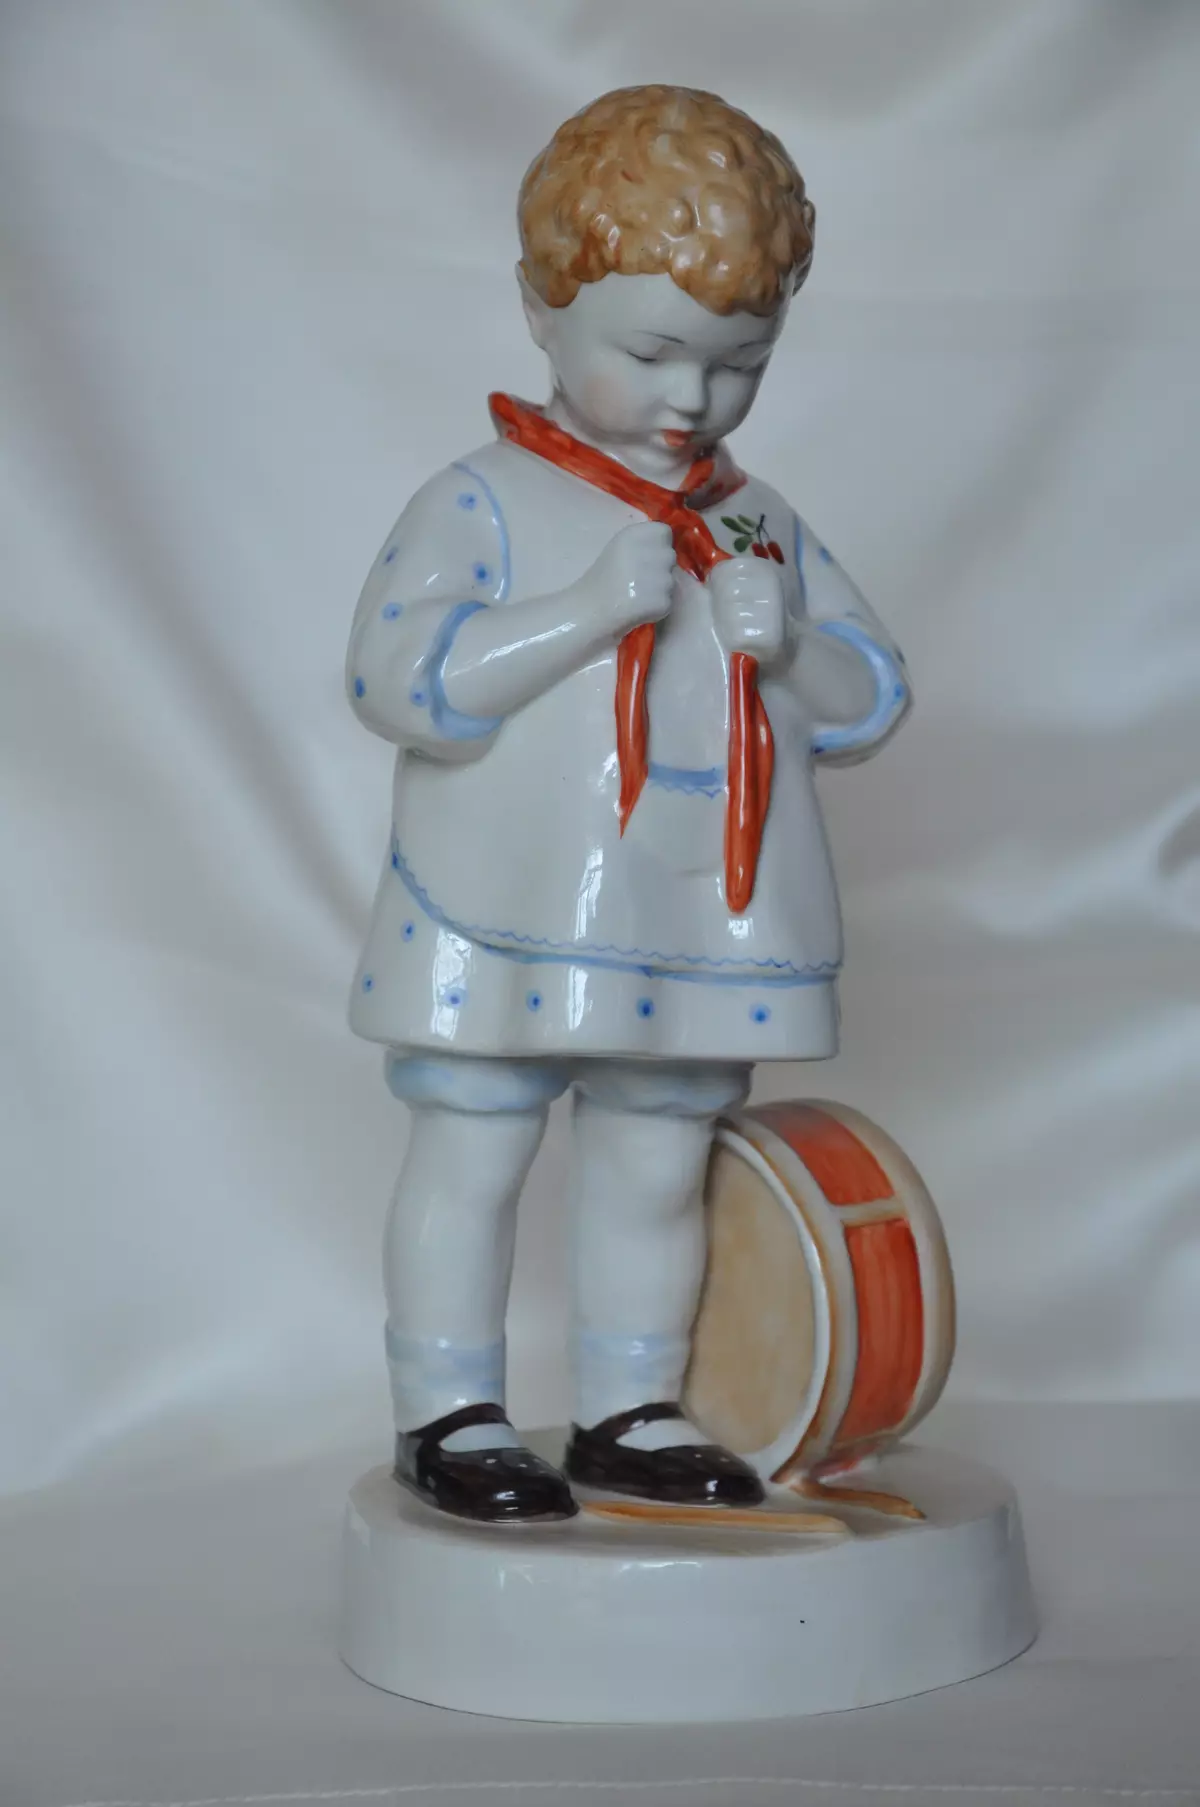 Figuras de la porcelana del período soviético: modelos raros. Fabricantes de los tiempos de la URSS, GZHEL, las figuritas más caras, 